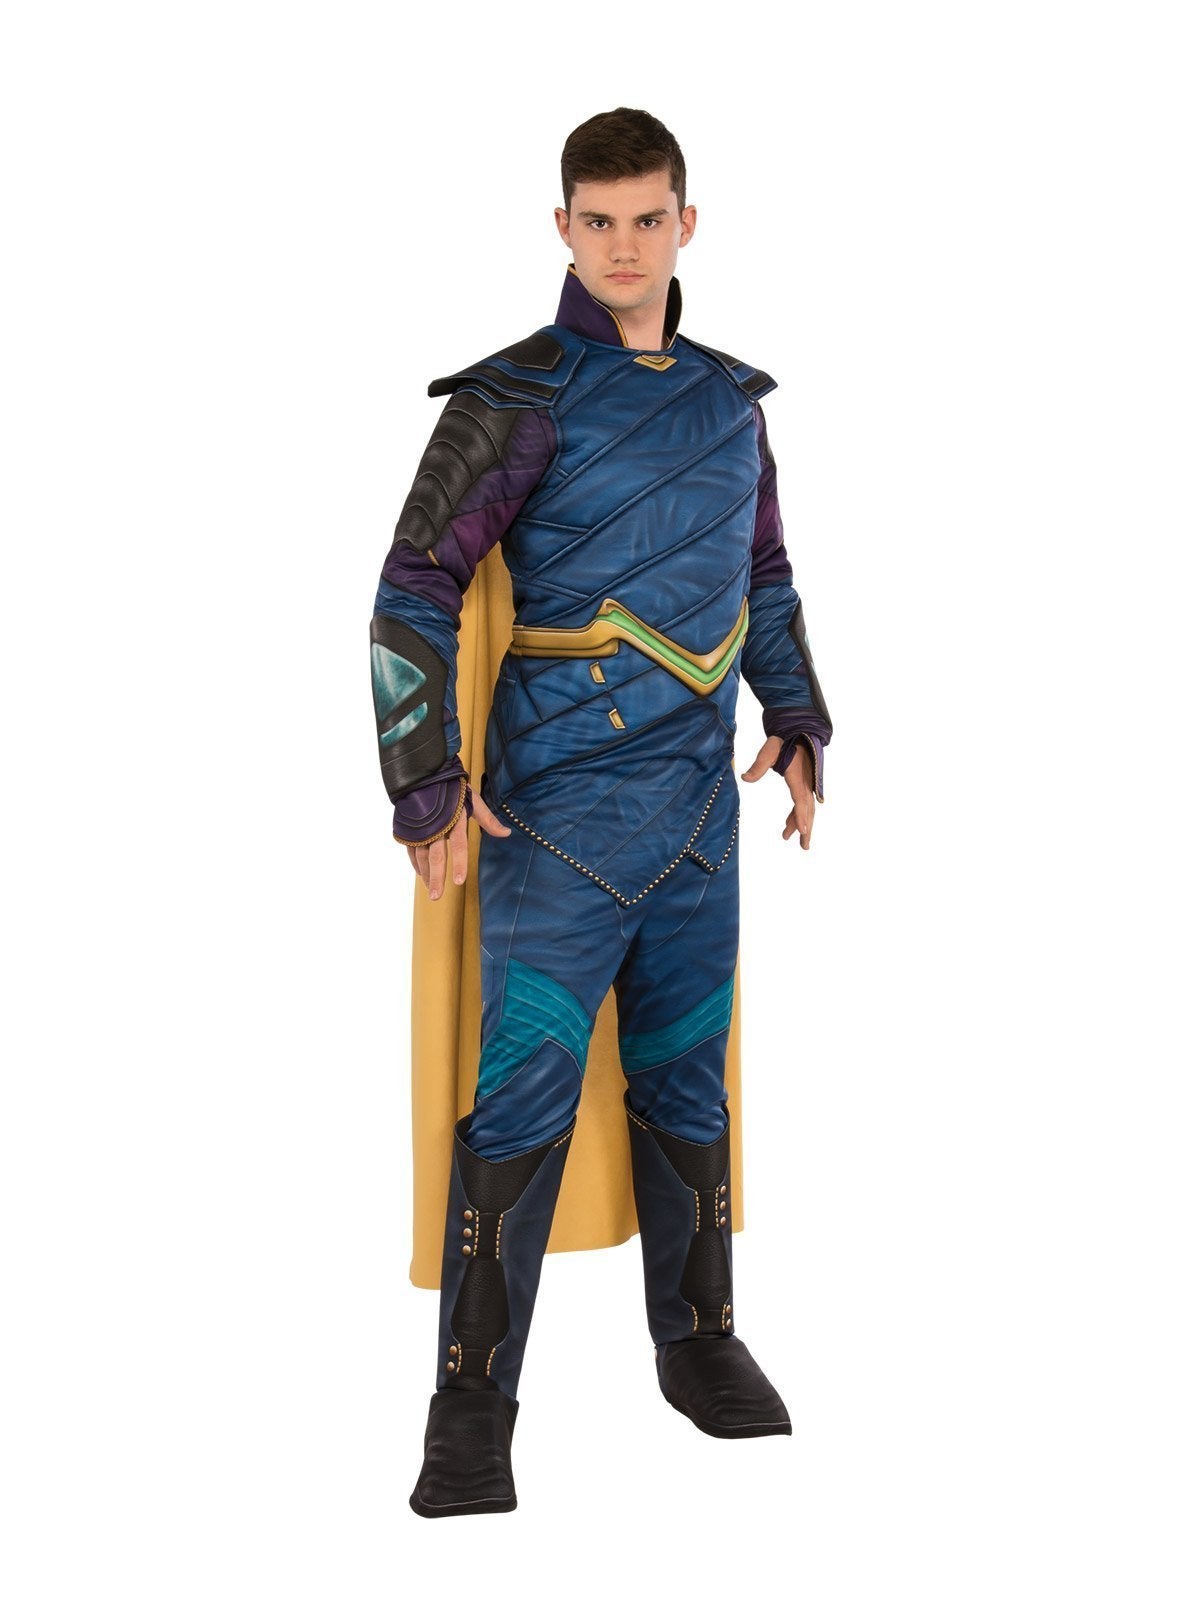 Loki Deluxe Costume for Adults - Marvel Avengers